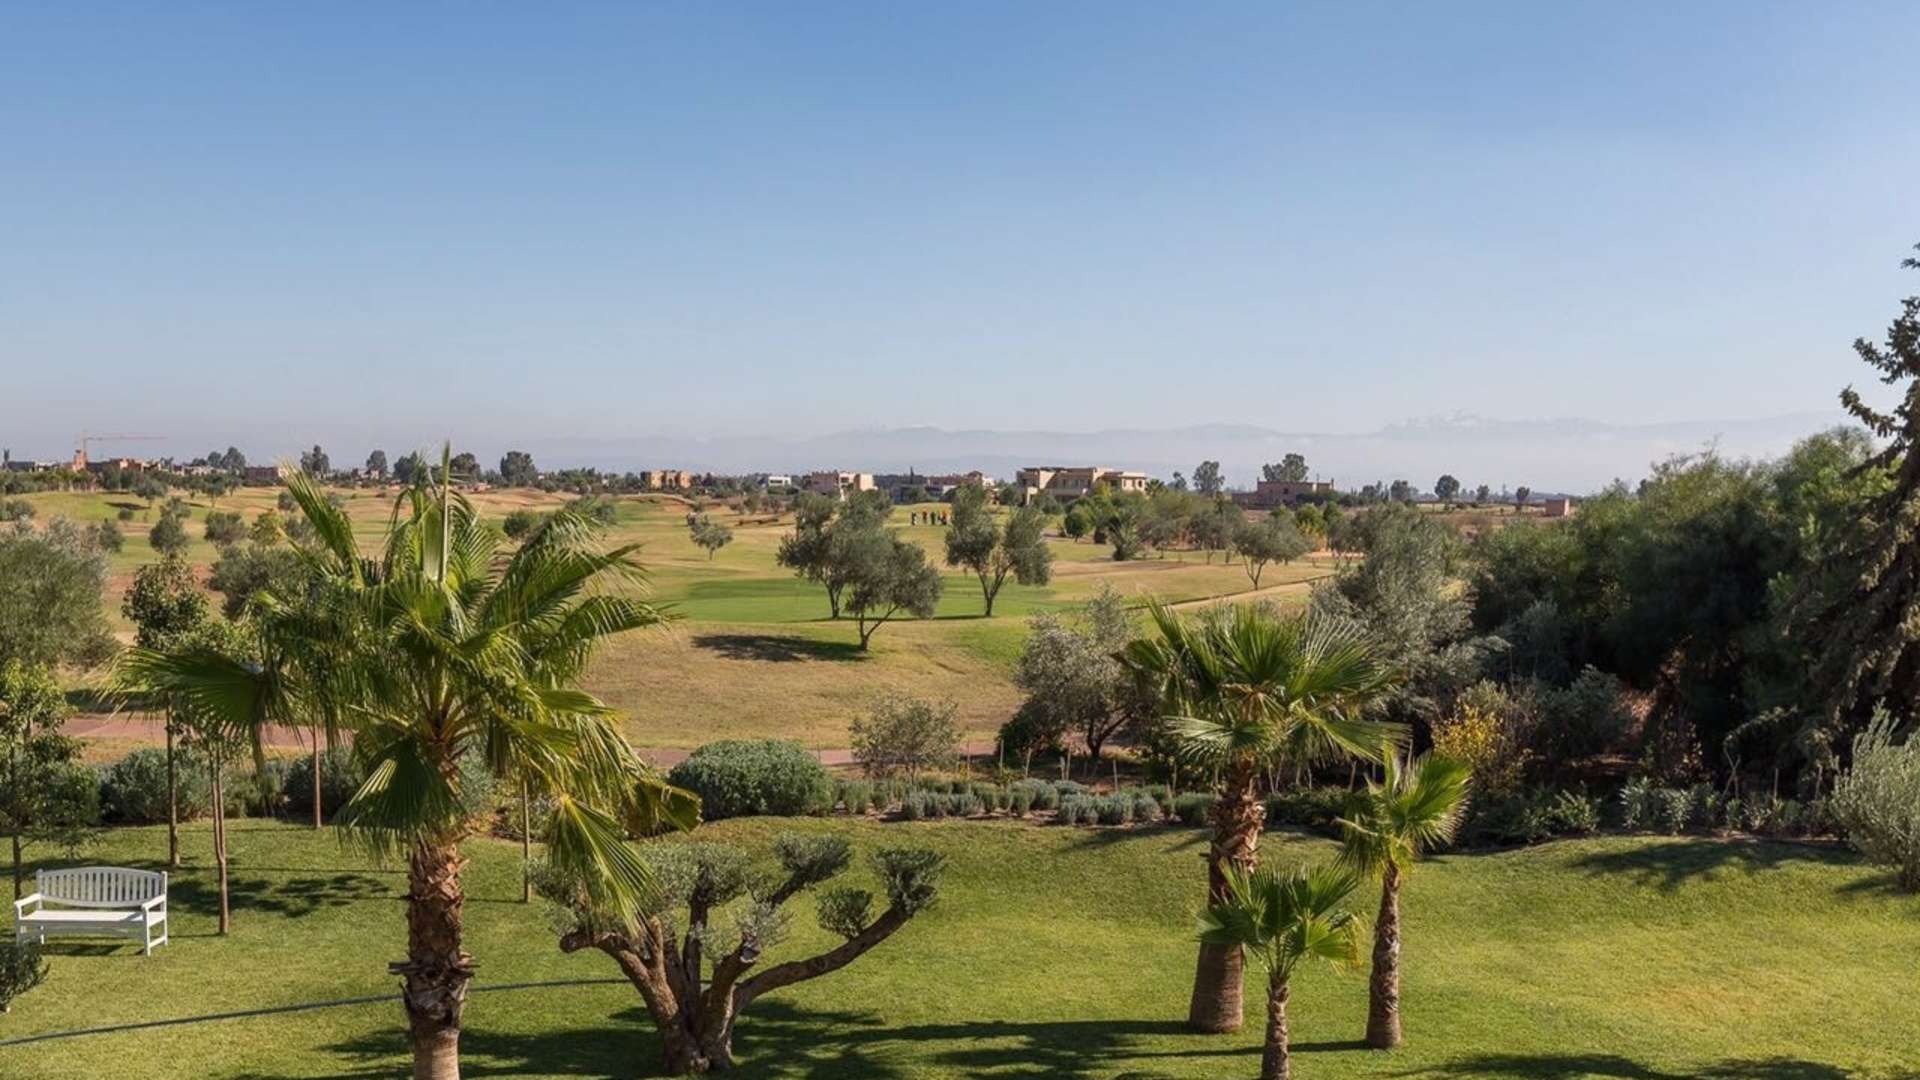 Vente,Villa,Superbe villa 5ch toute neuve de style contemporain en première ligne sur le golf d'Amelkis,Marrakech,Amelkis Golf Resort